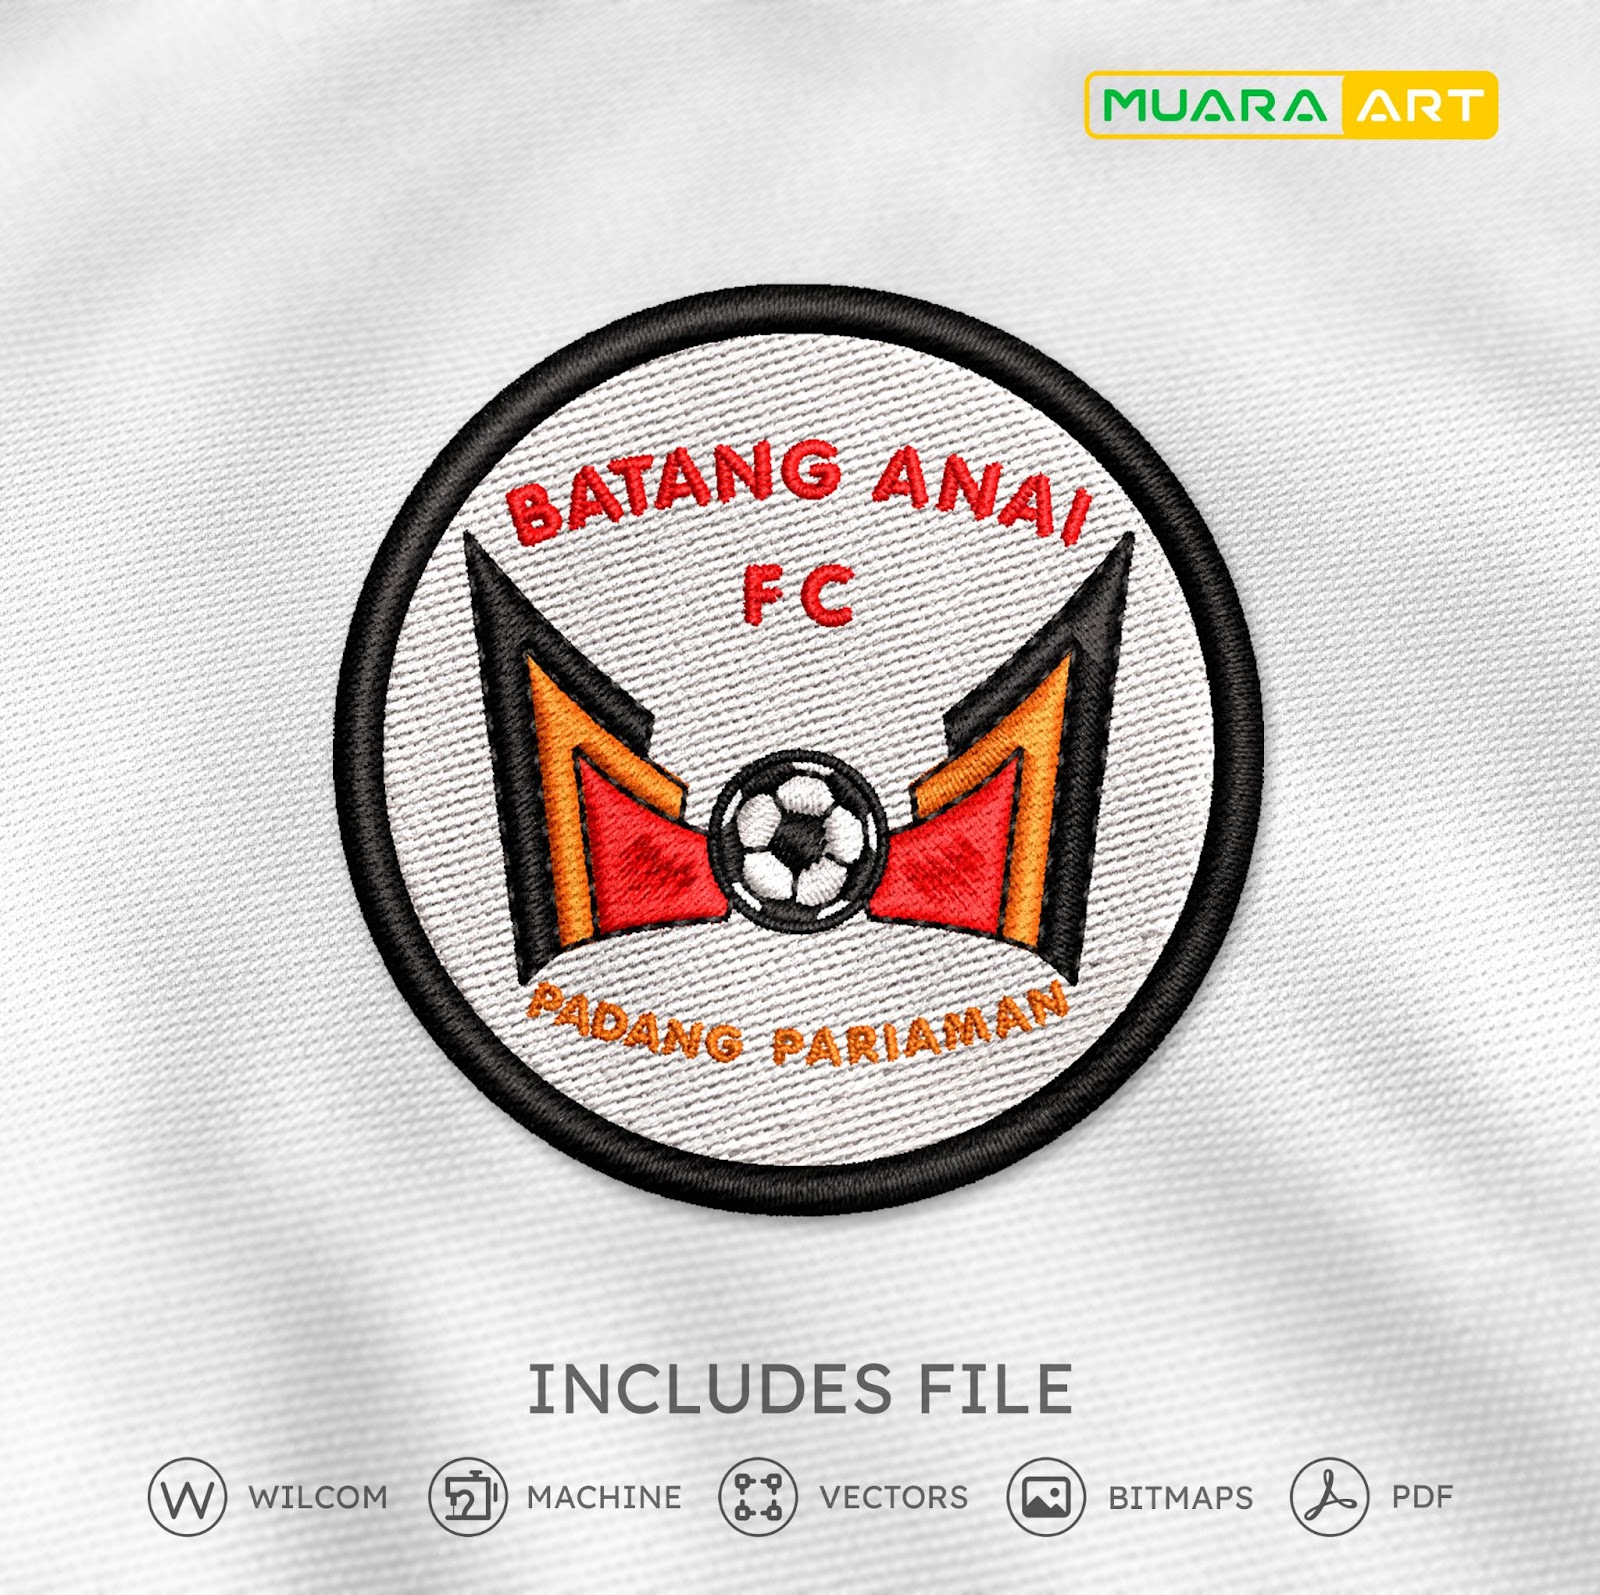 Desain Bordir Logo Batang Anai FC (Sumatera Barat)